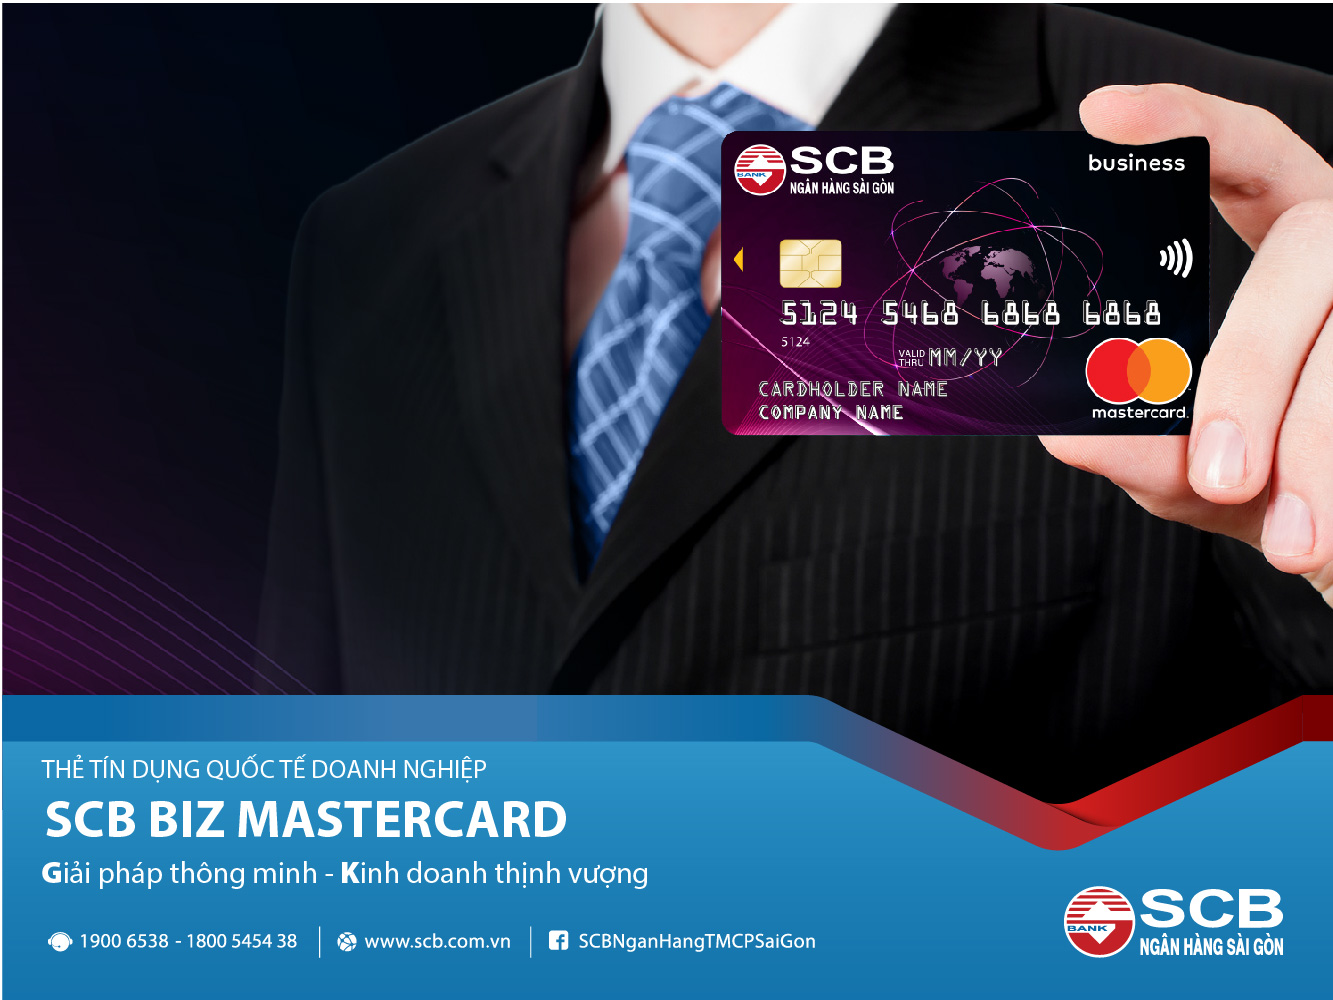 SCB Biz Mastercard mang đến cho Khách hàng những giải pháp quản lý tài chính thông minh và tối ưu nhất.